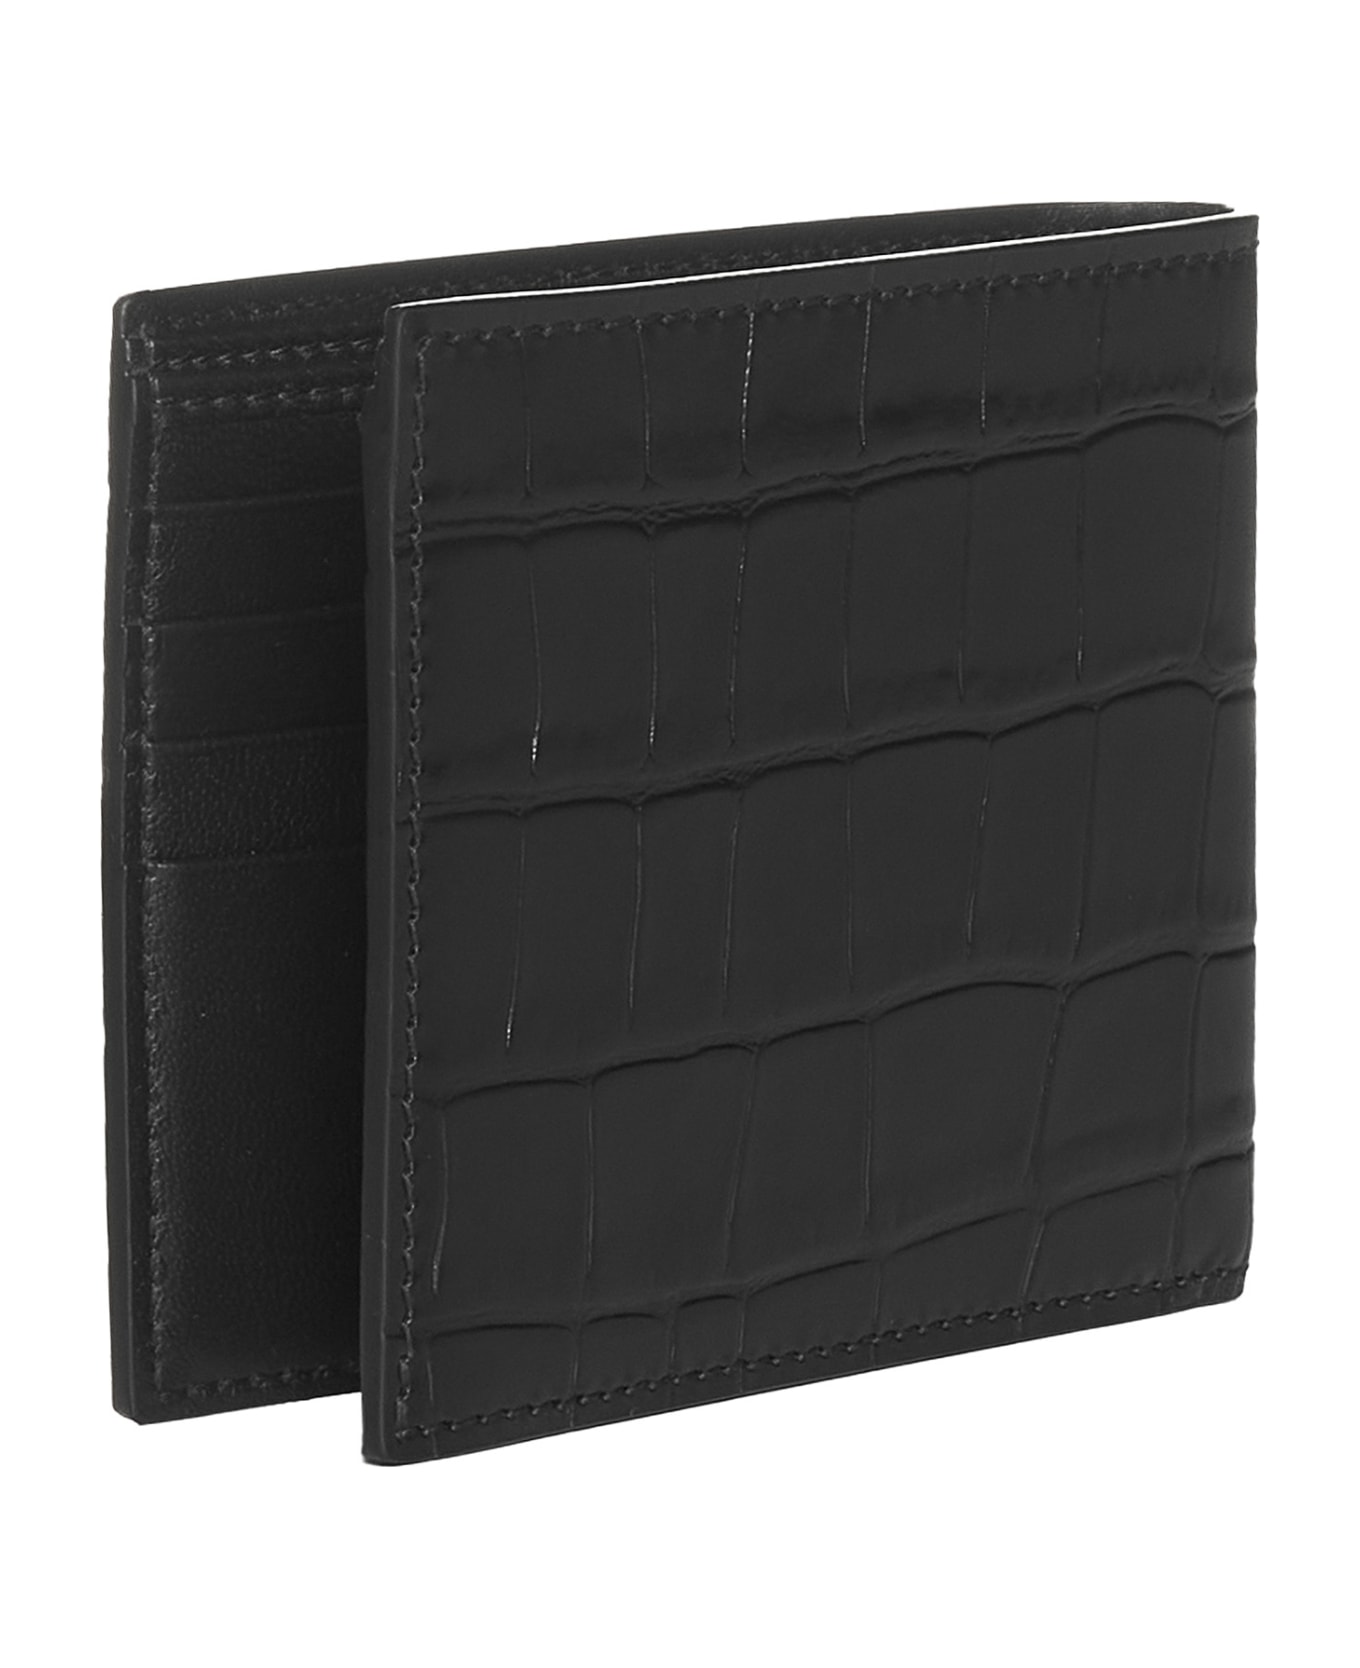 Alexander McQueen Leather Wallet - black